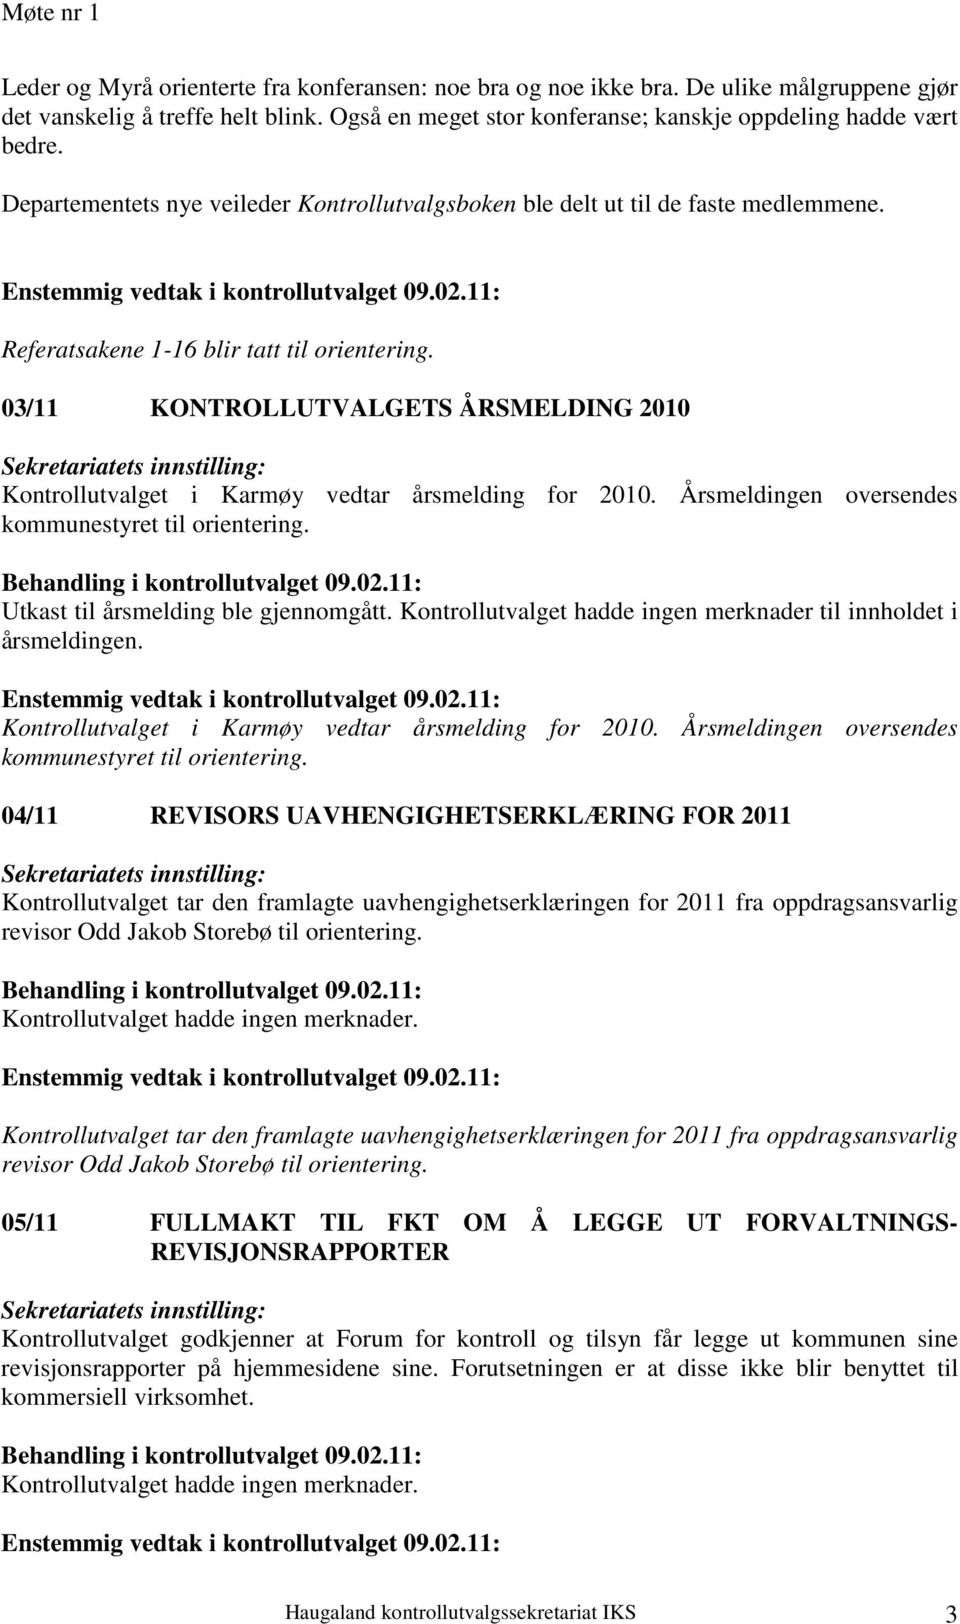 03/11 KONTROLLUTVALGETS ÅRSMELDING 2010 Kontrollutvalget i Karmøy vedtar årsmelding for 2010. Årsmeldingen oversendes kommunestyret til orientering. Utkast til årsmelding ble gjennomgått.